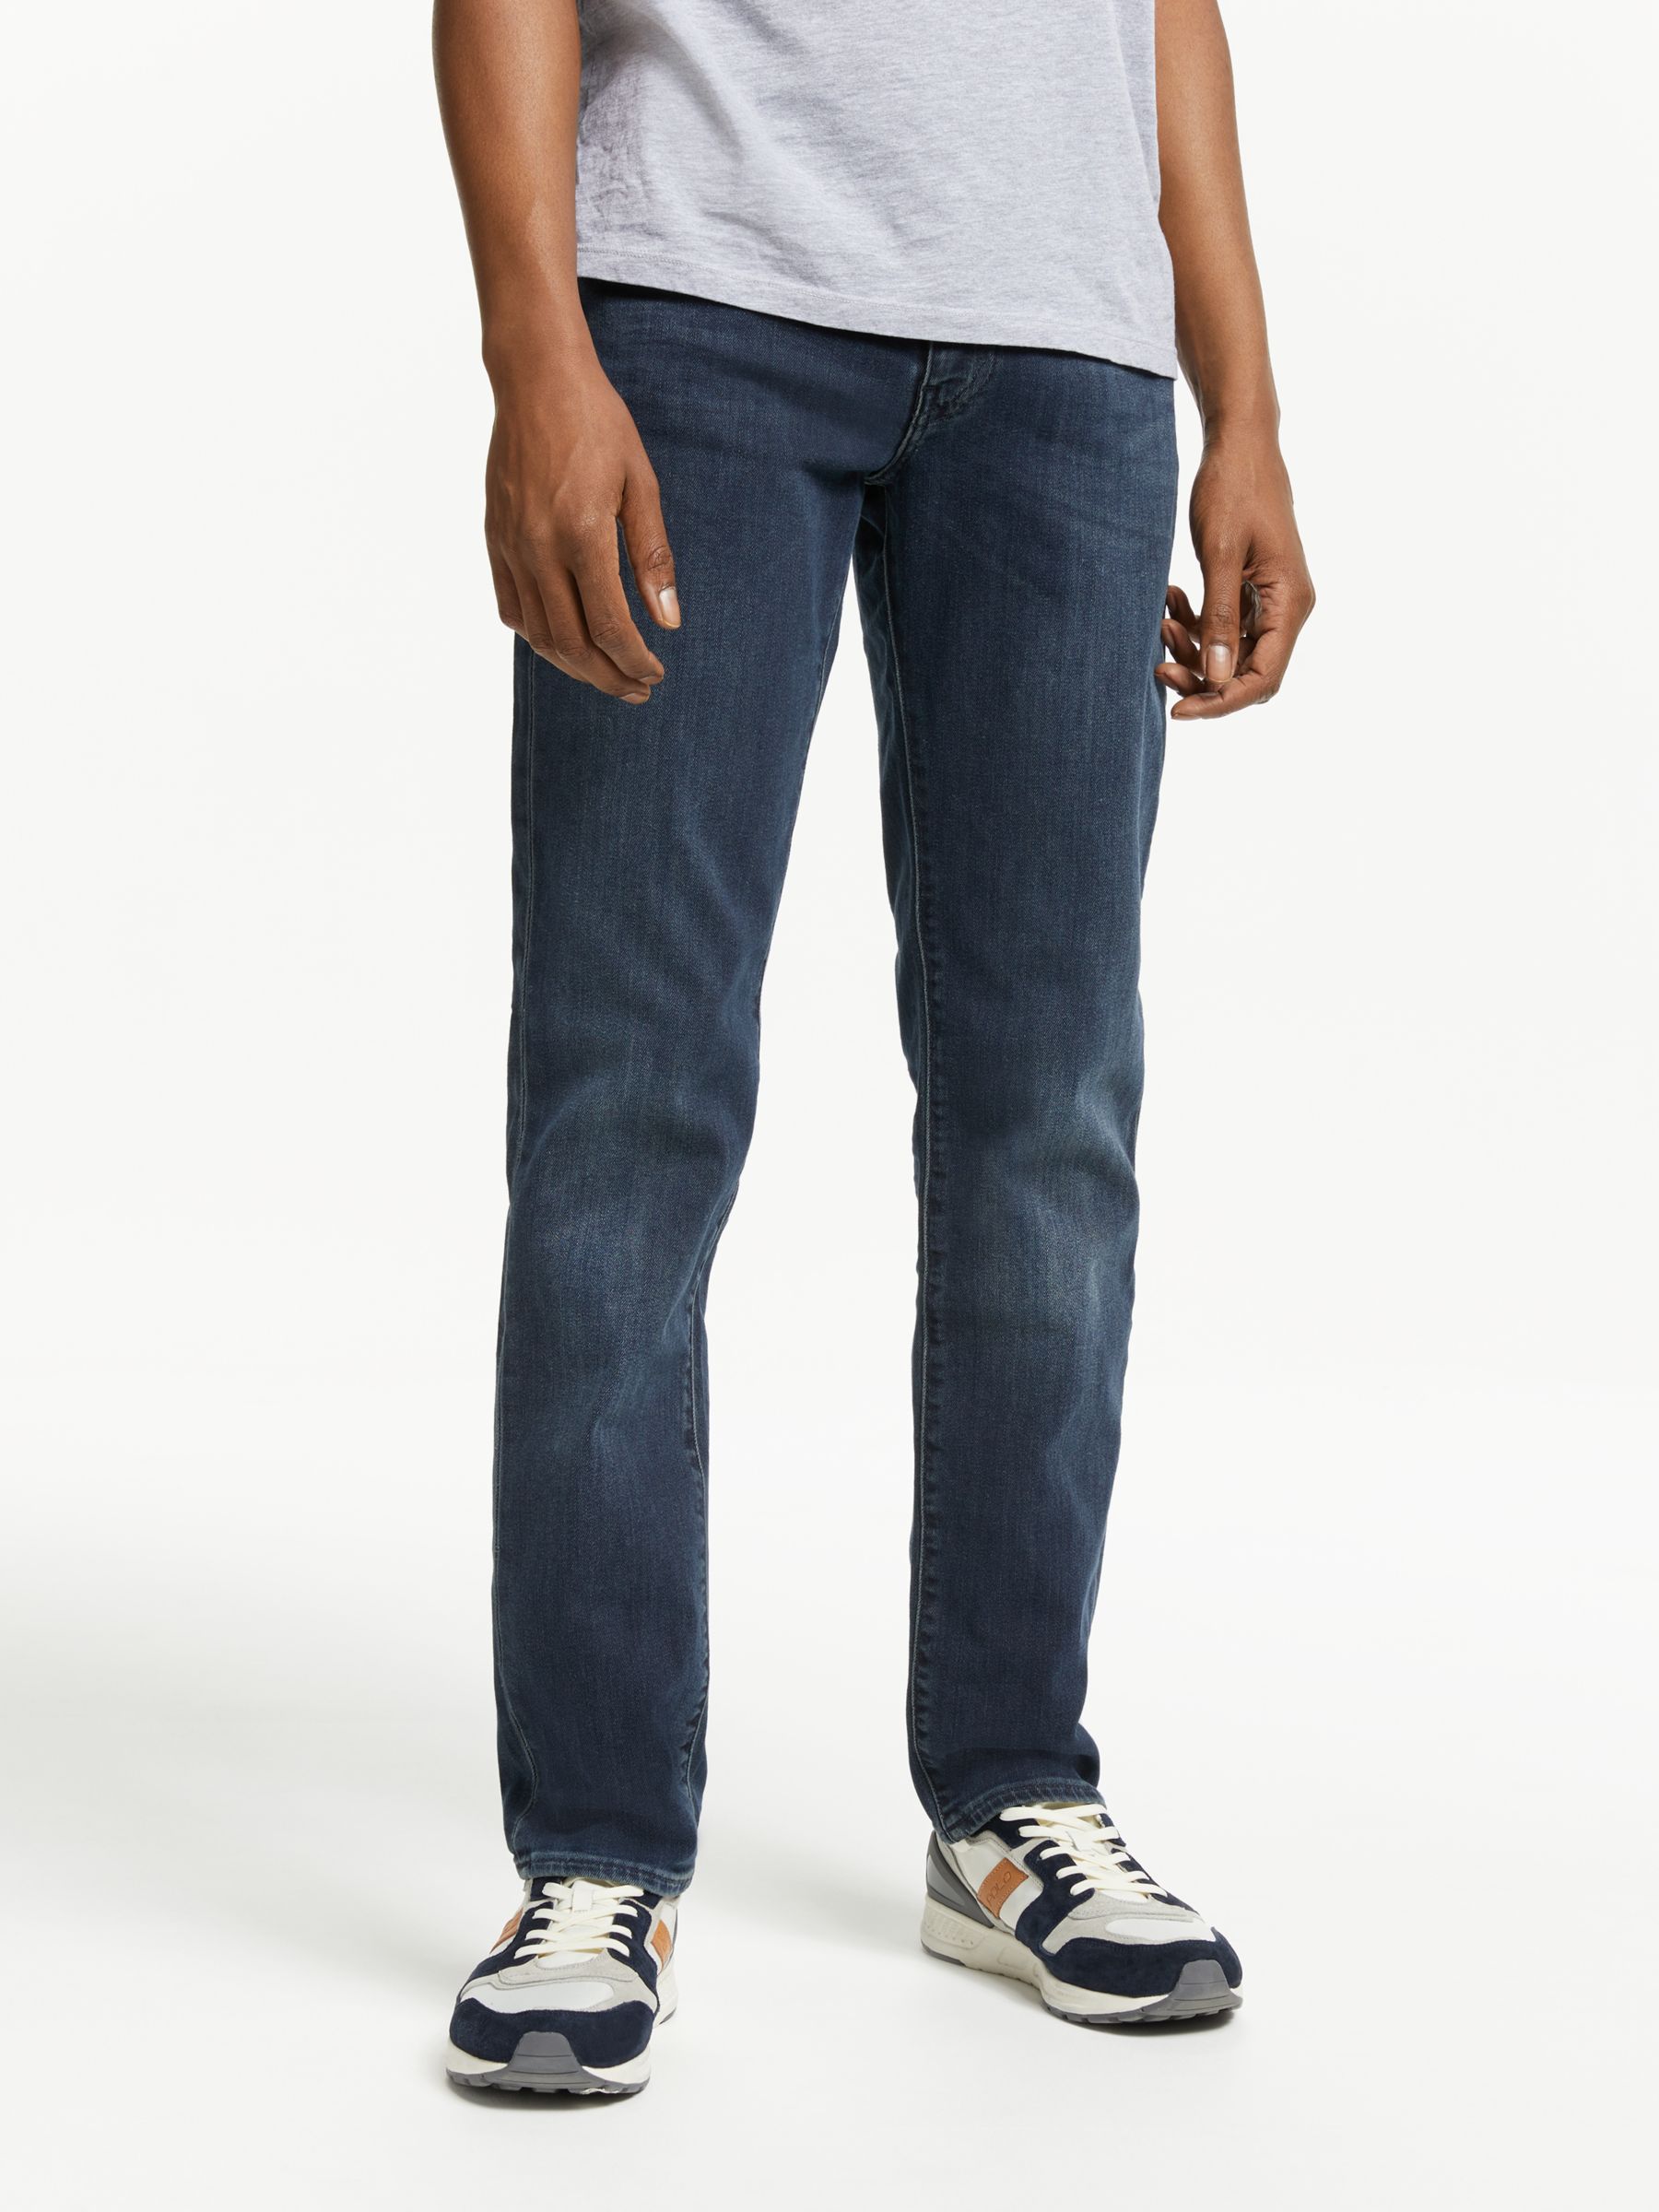 levis jeans 511 regular fit